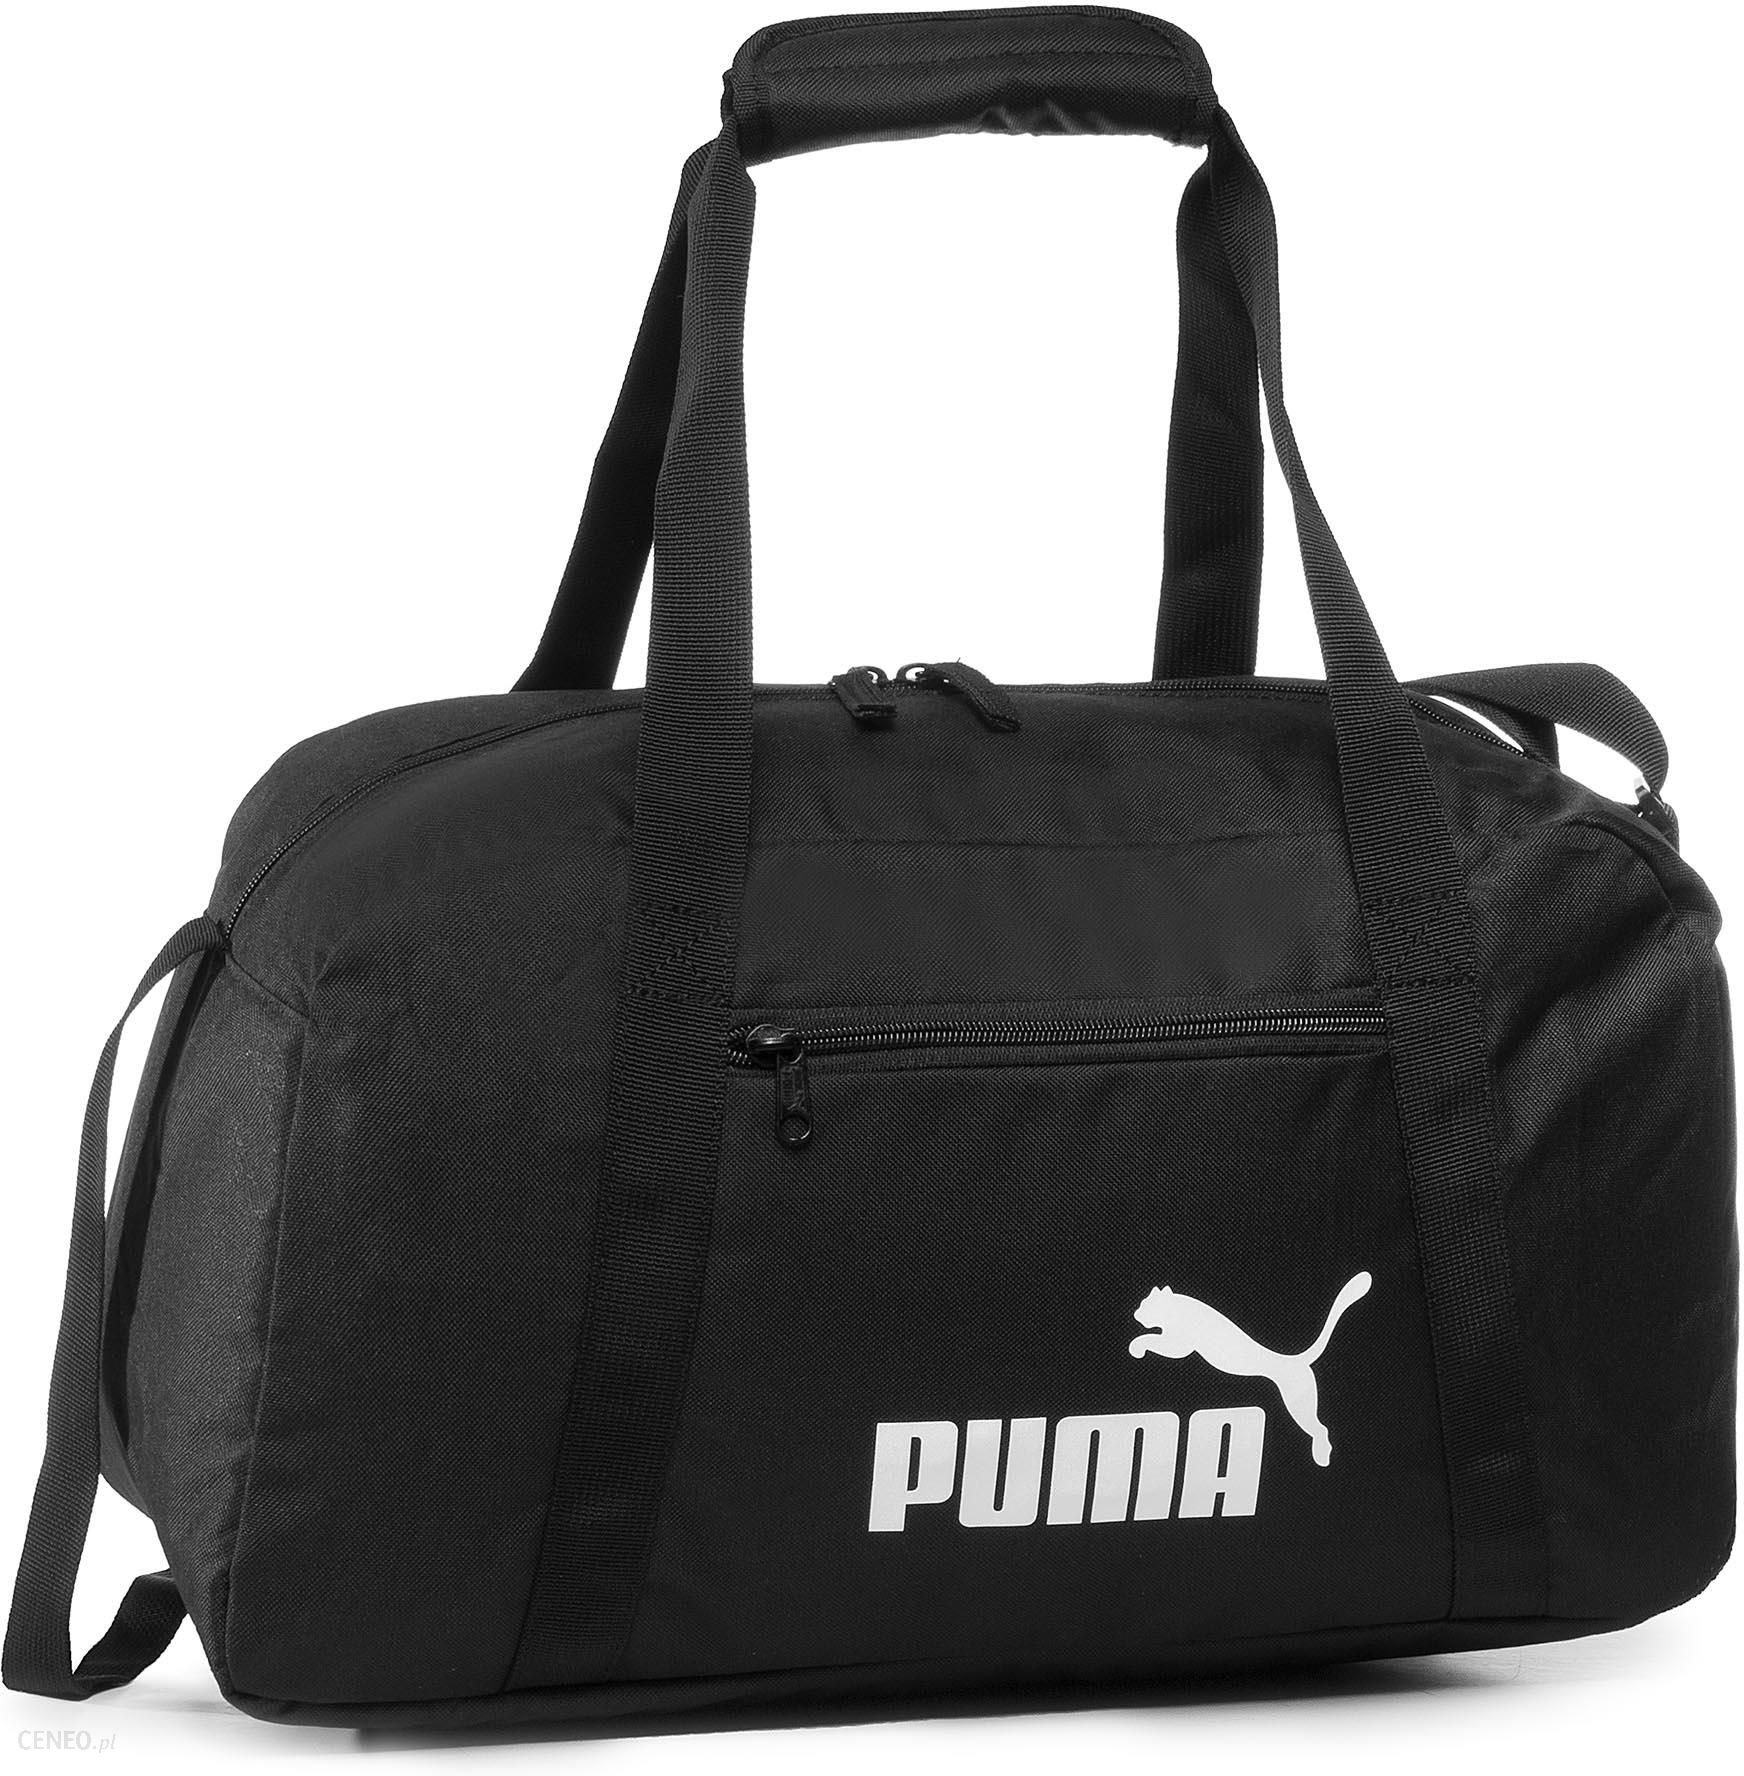 Мужская сумка пума. Сумка phase Sports Bag. Спортивная сумка Пума. Сумка черная Puma. Спортивная сумка Пума мужская.